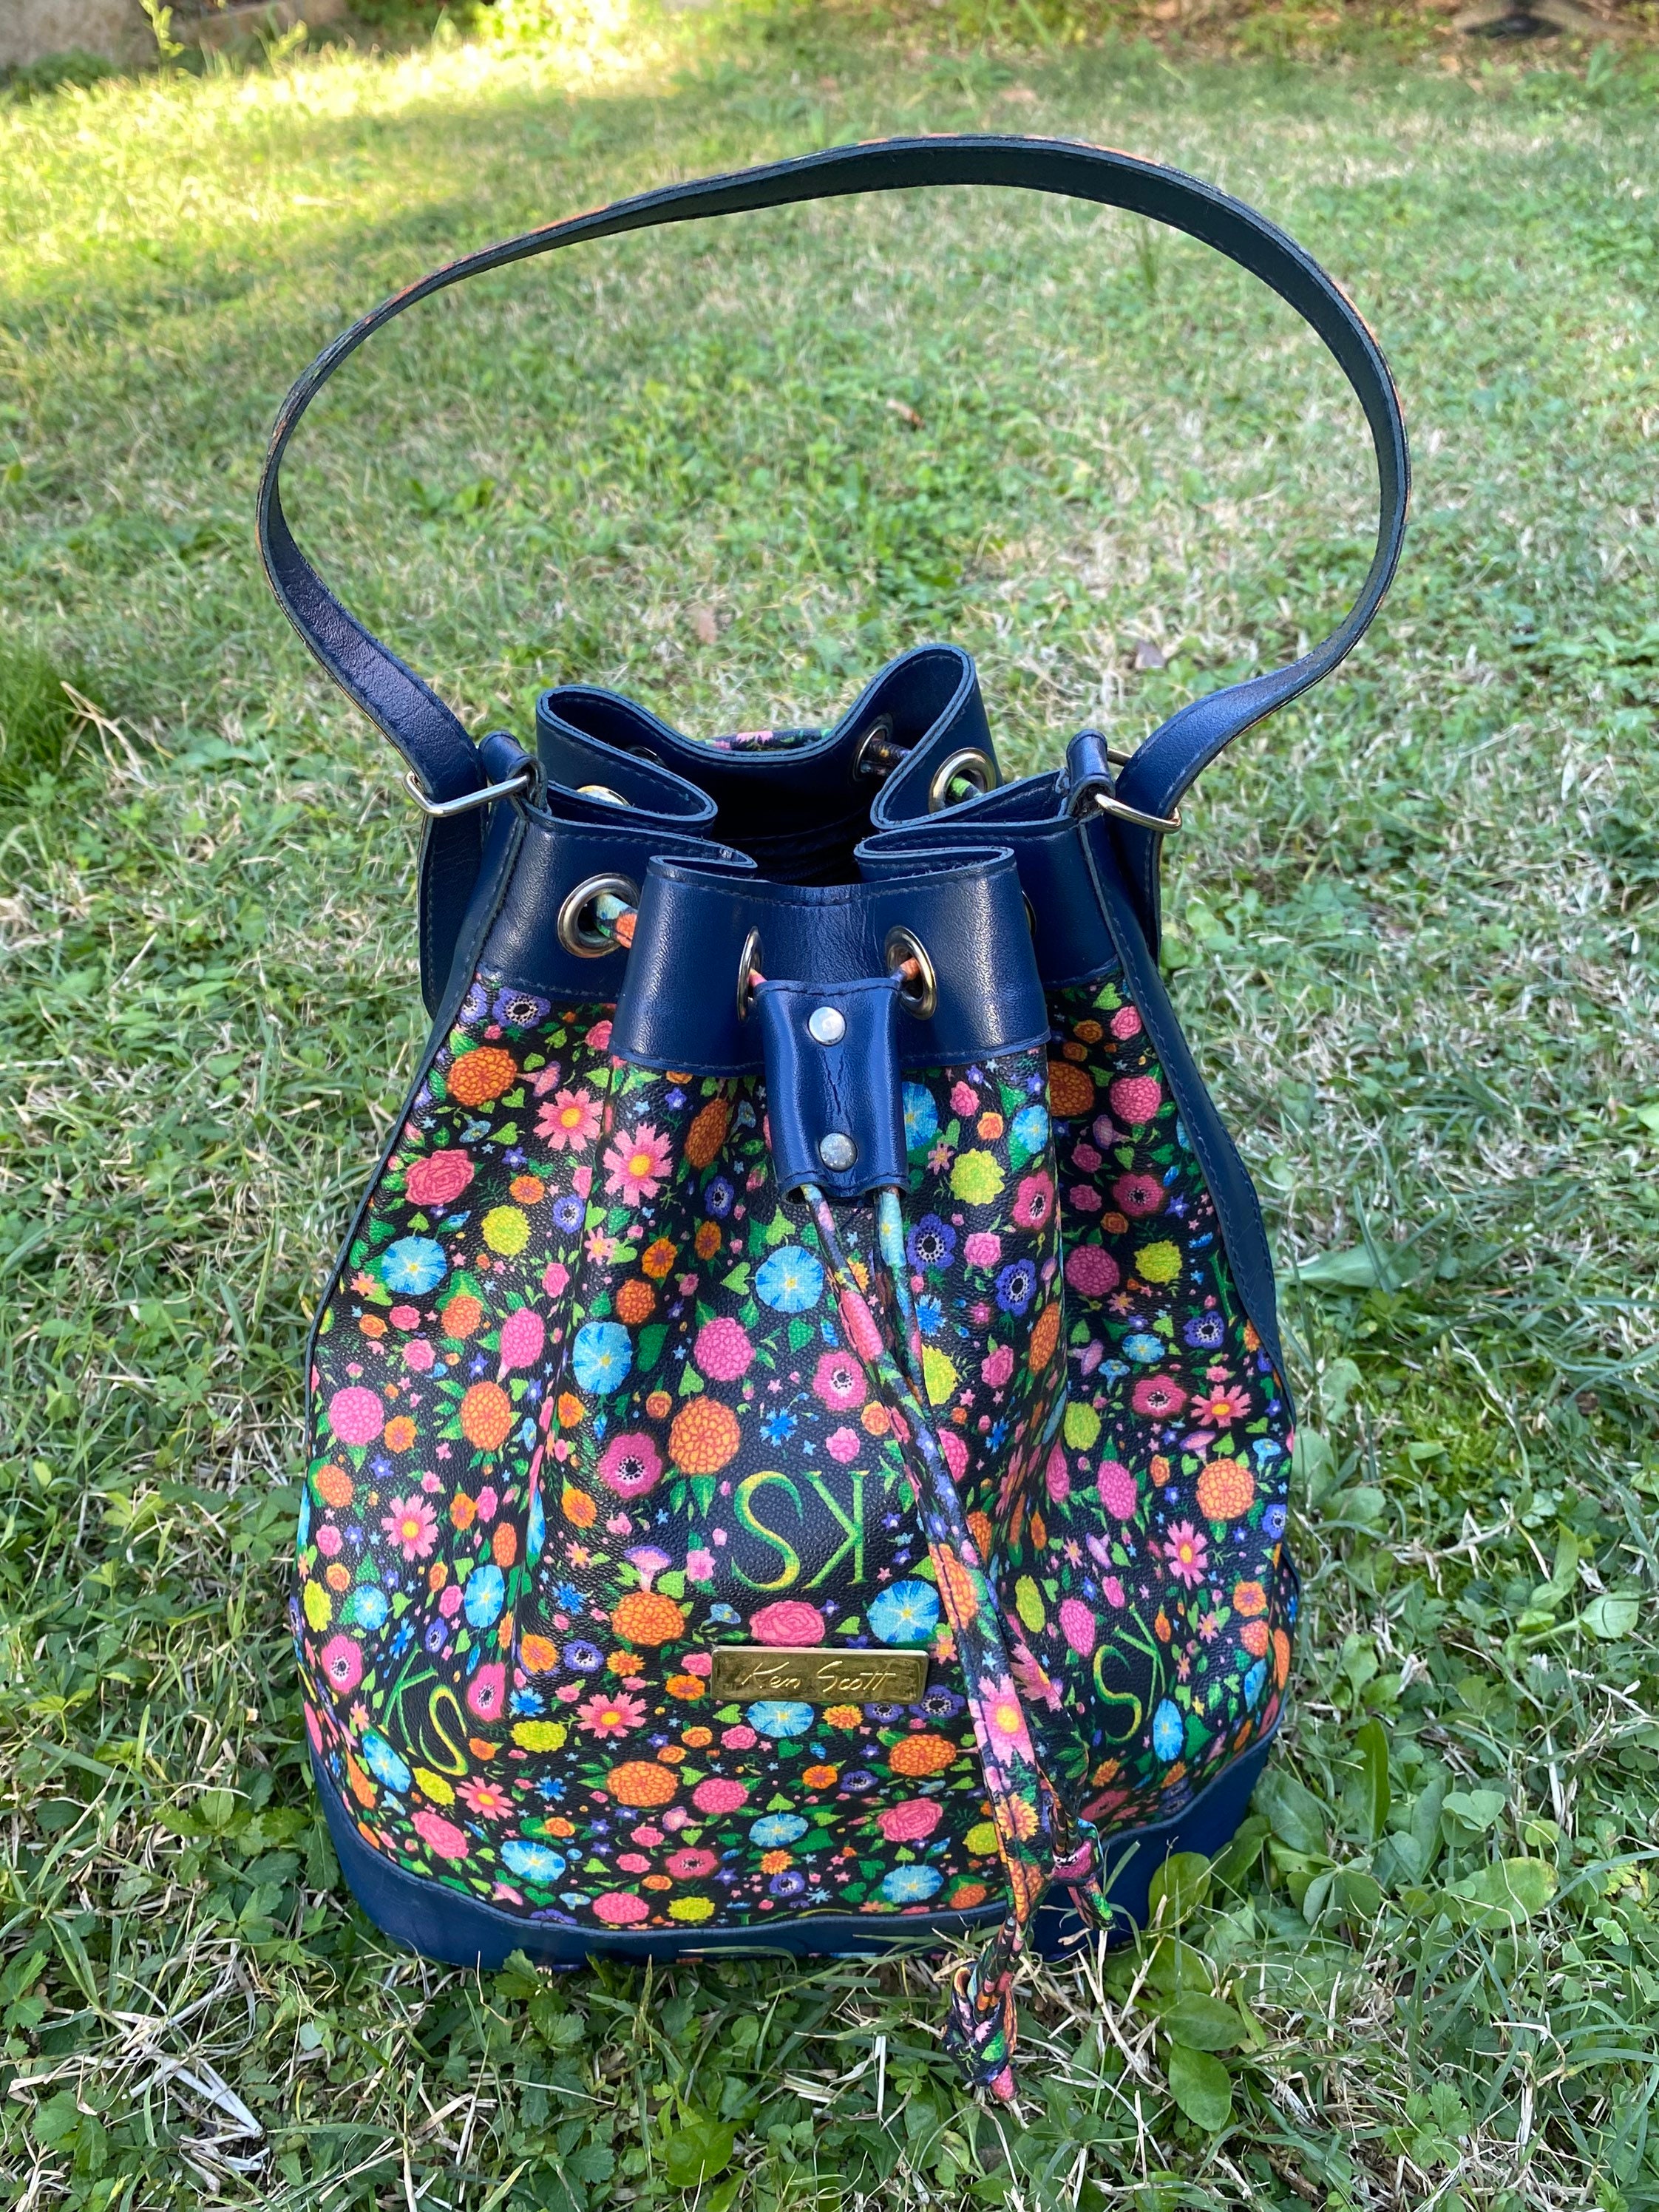 Crossbody Bag, Shoulder Bag, Senior Sense Of Women's Bags, Vintage Old  Flowers Commuting Large Capacity Bucket Bag Brown flower: Handbags